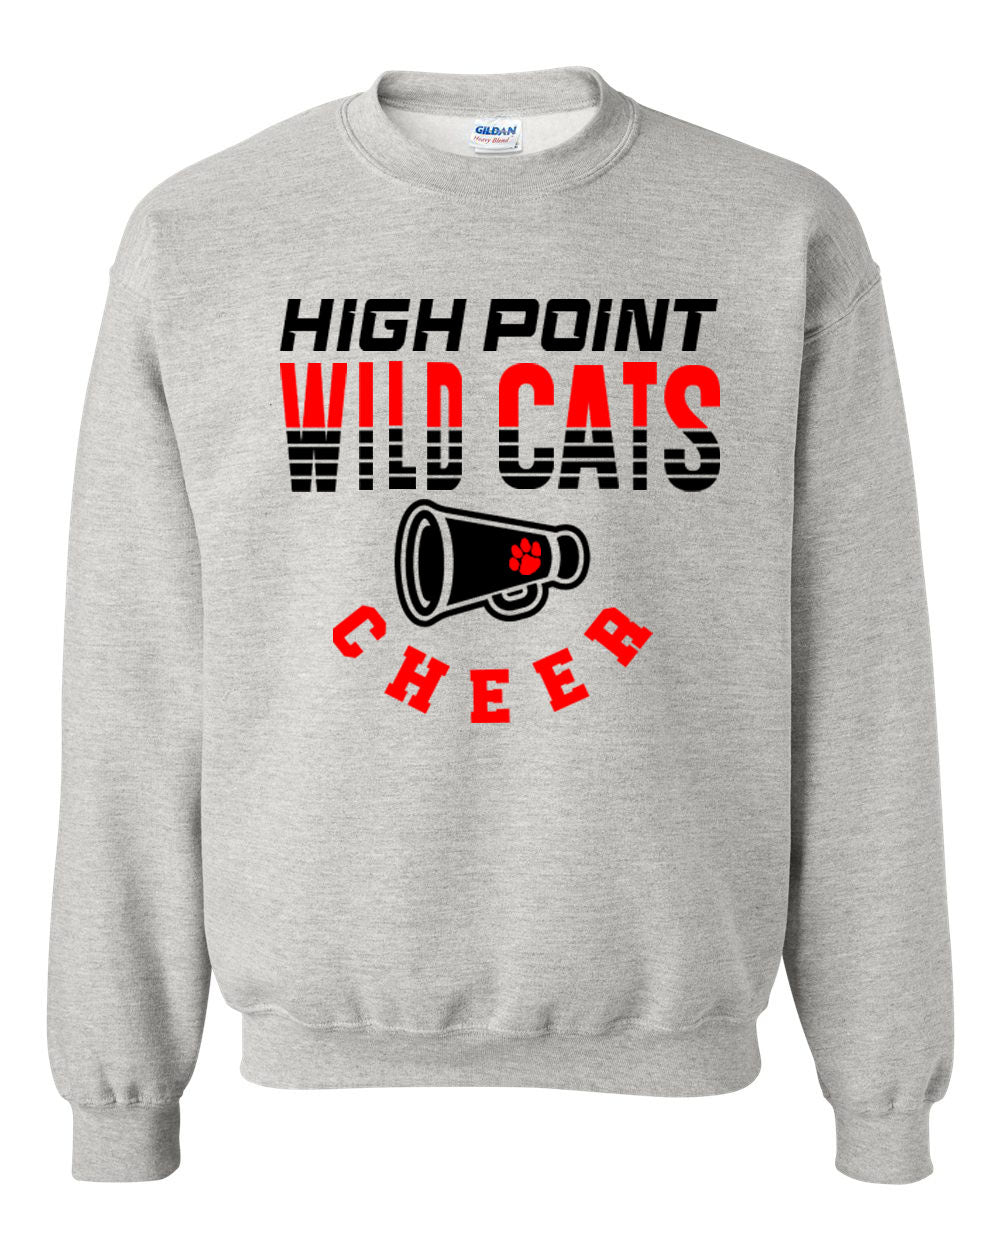 Wildcats Cheer Design 2 non hooded sweatshirt